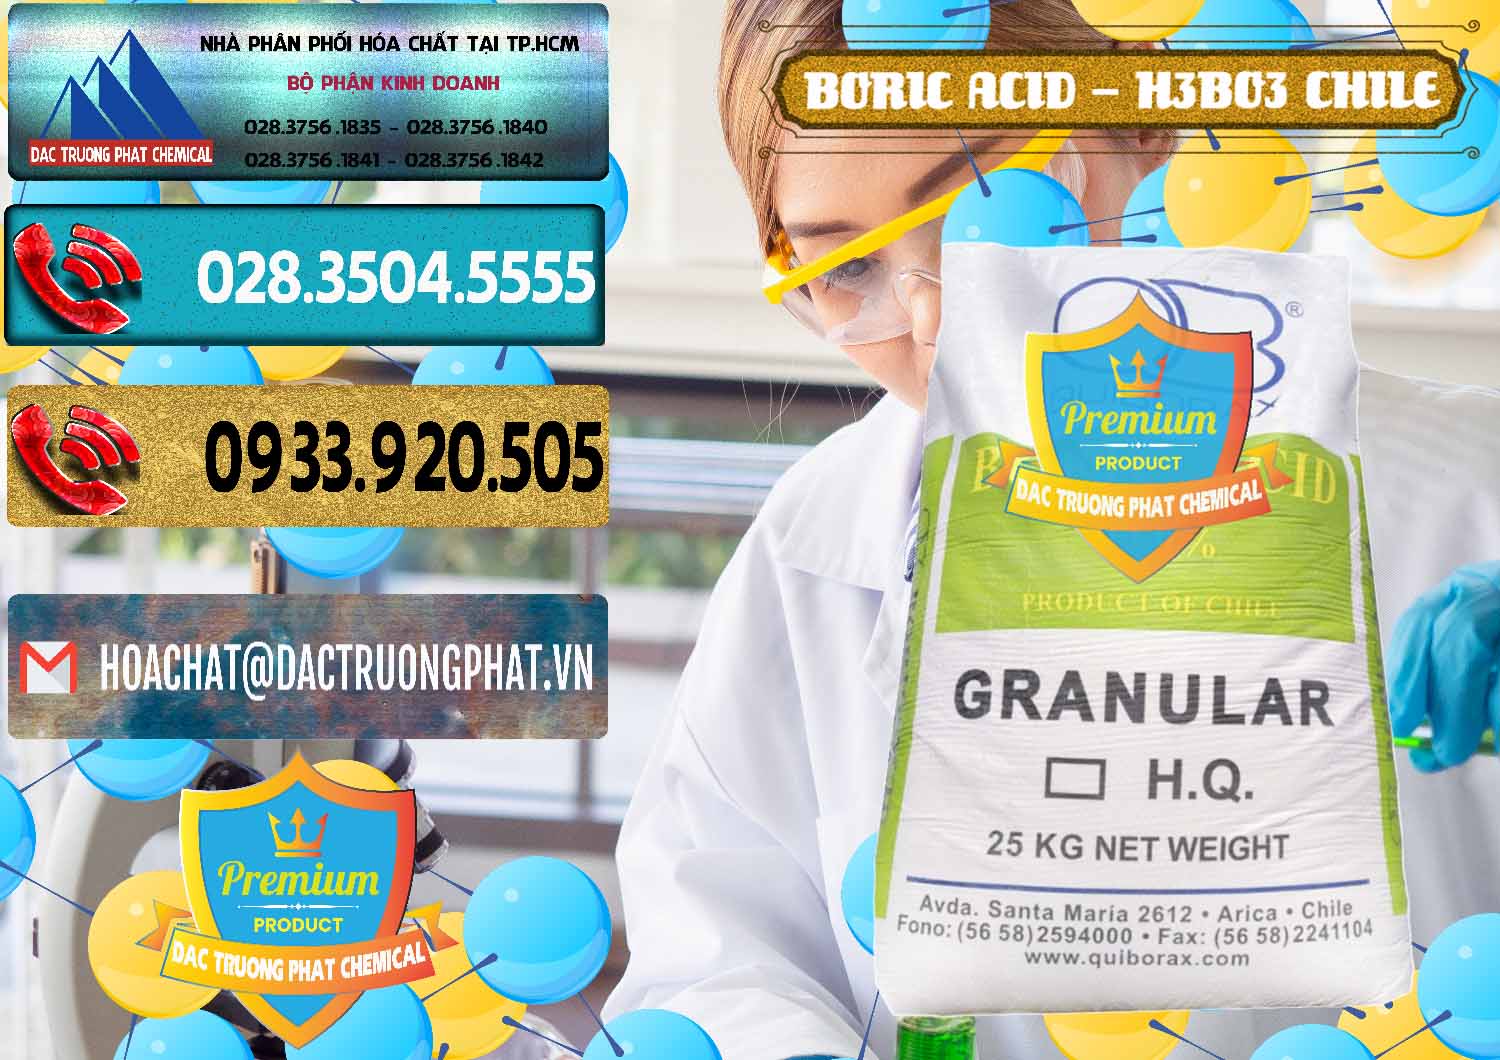 Cung cấp - bán Acid Boric – Axit Boric H3BO3 99% Quiborax Chile - 0281 - Nhà phân phối _ bán hóa chất tại TP.HCM - hoachatdetnhuom.com